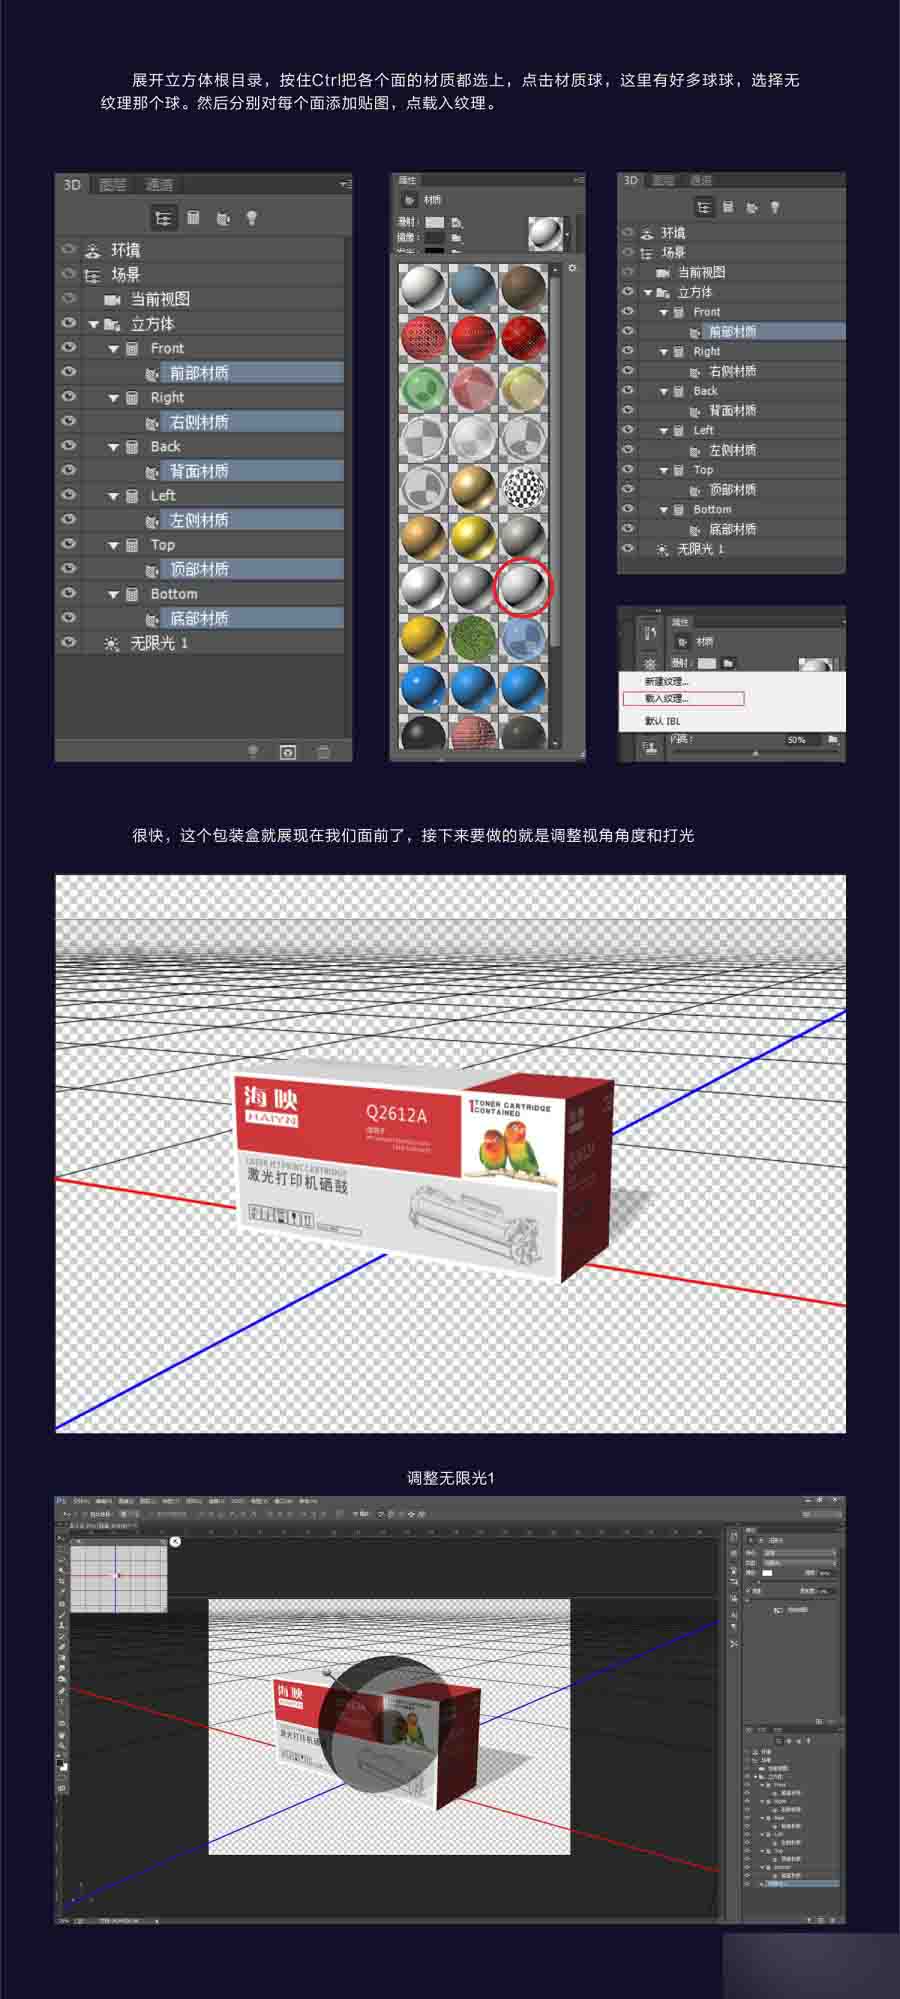 PhotoShop CC的3D功能制作一款产品包装盒立体效果